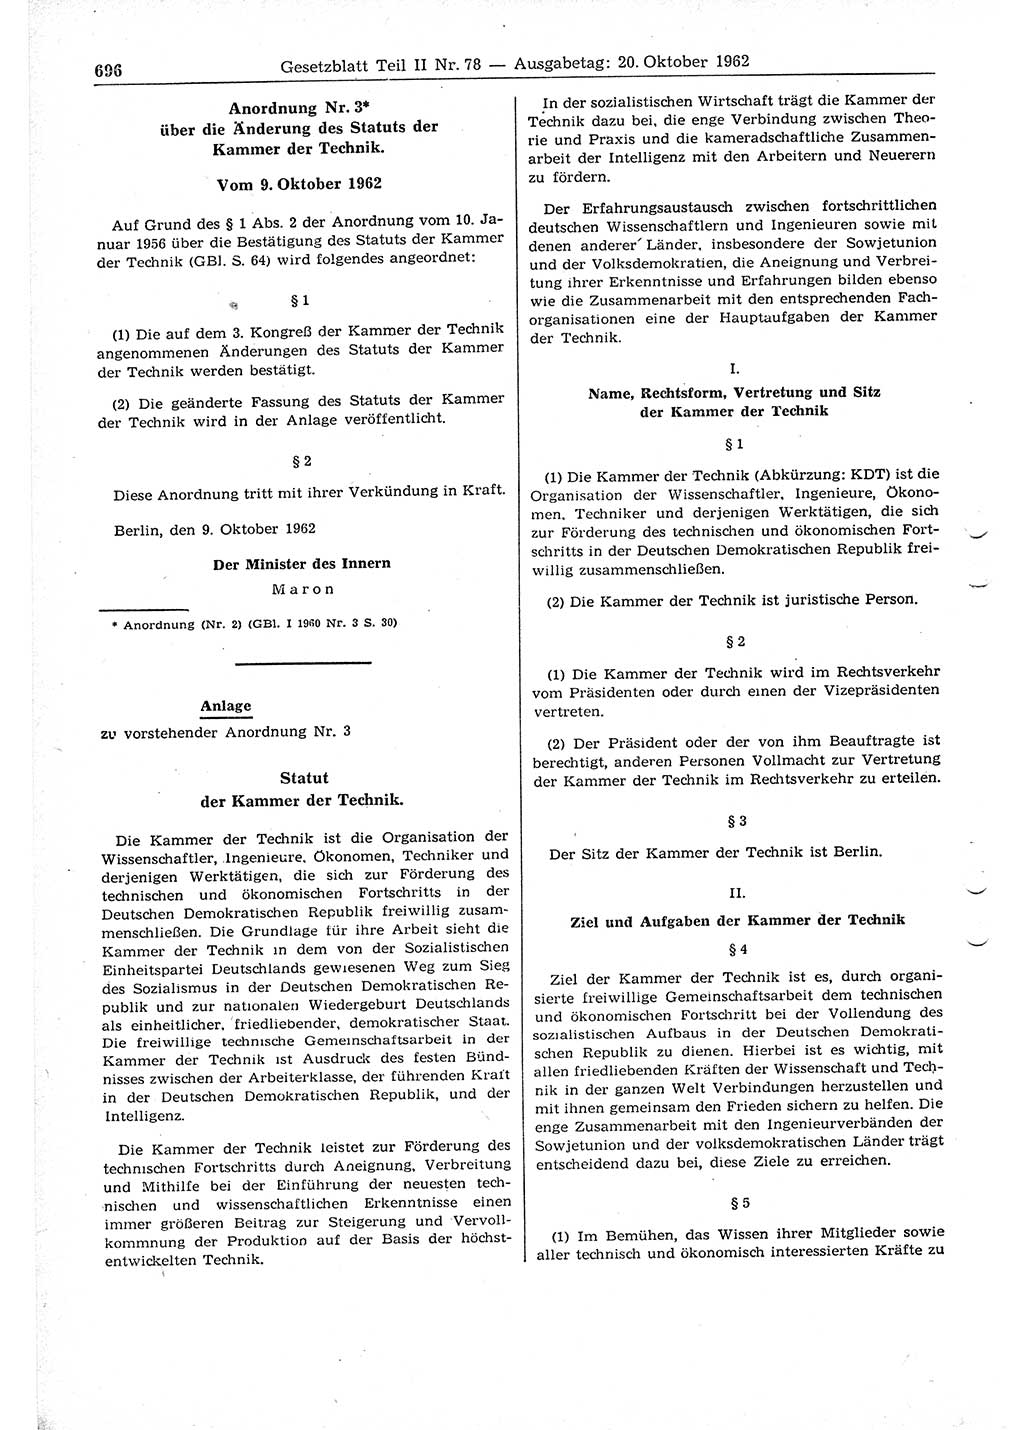 Gesetzblatt (GBl.) der Deutschen Demokratischen Republik (DDR) Teil ⅠⅠ 1962, Seite 696 (GBl. DDR ⅠⅠ 1962, S. 696)